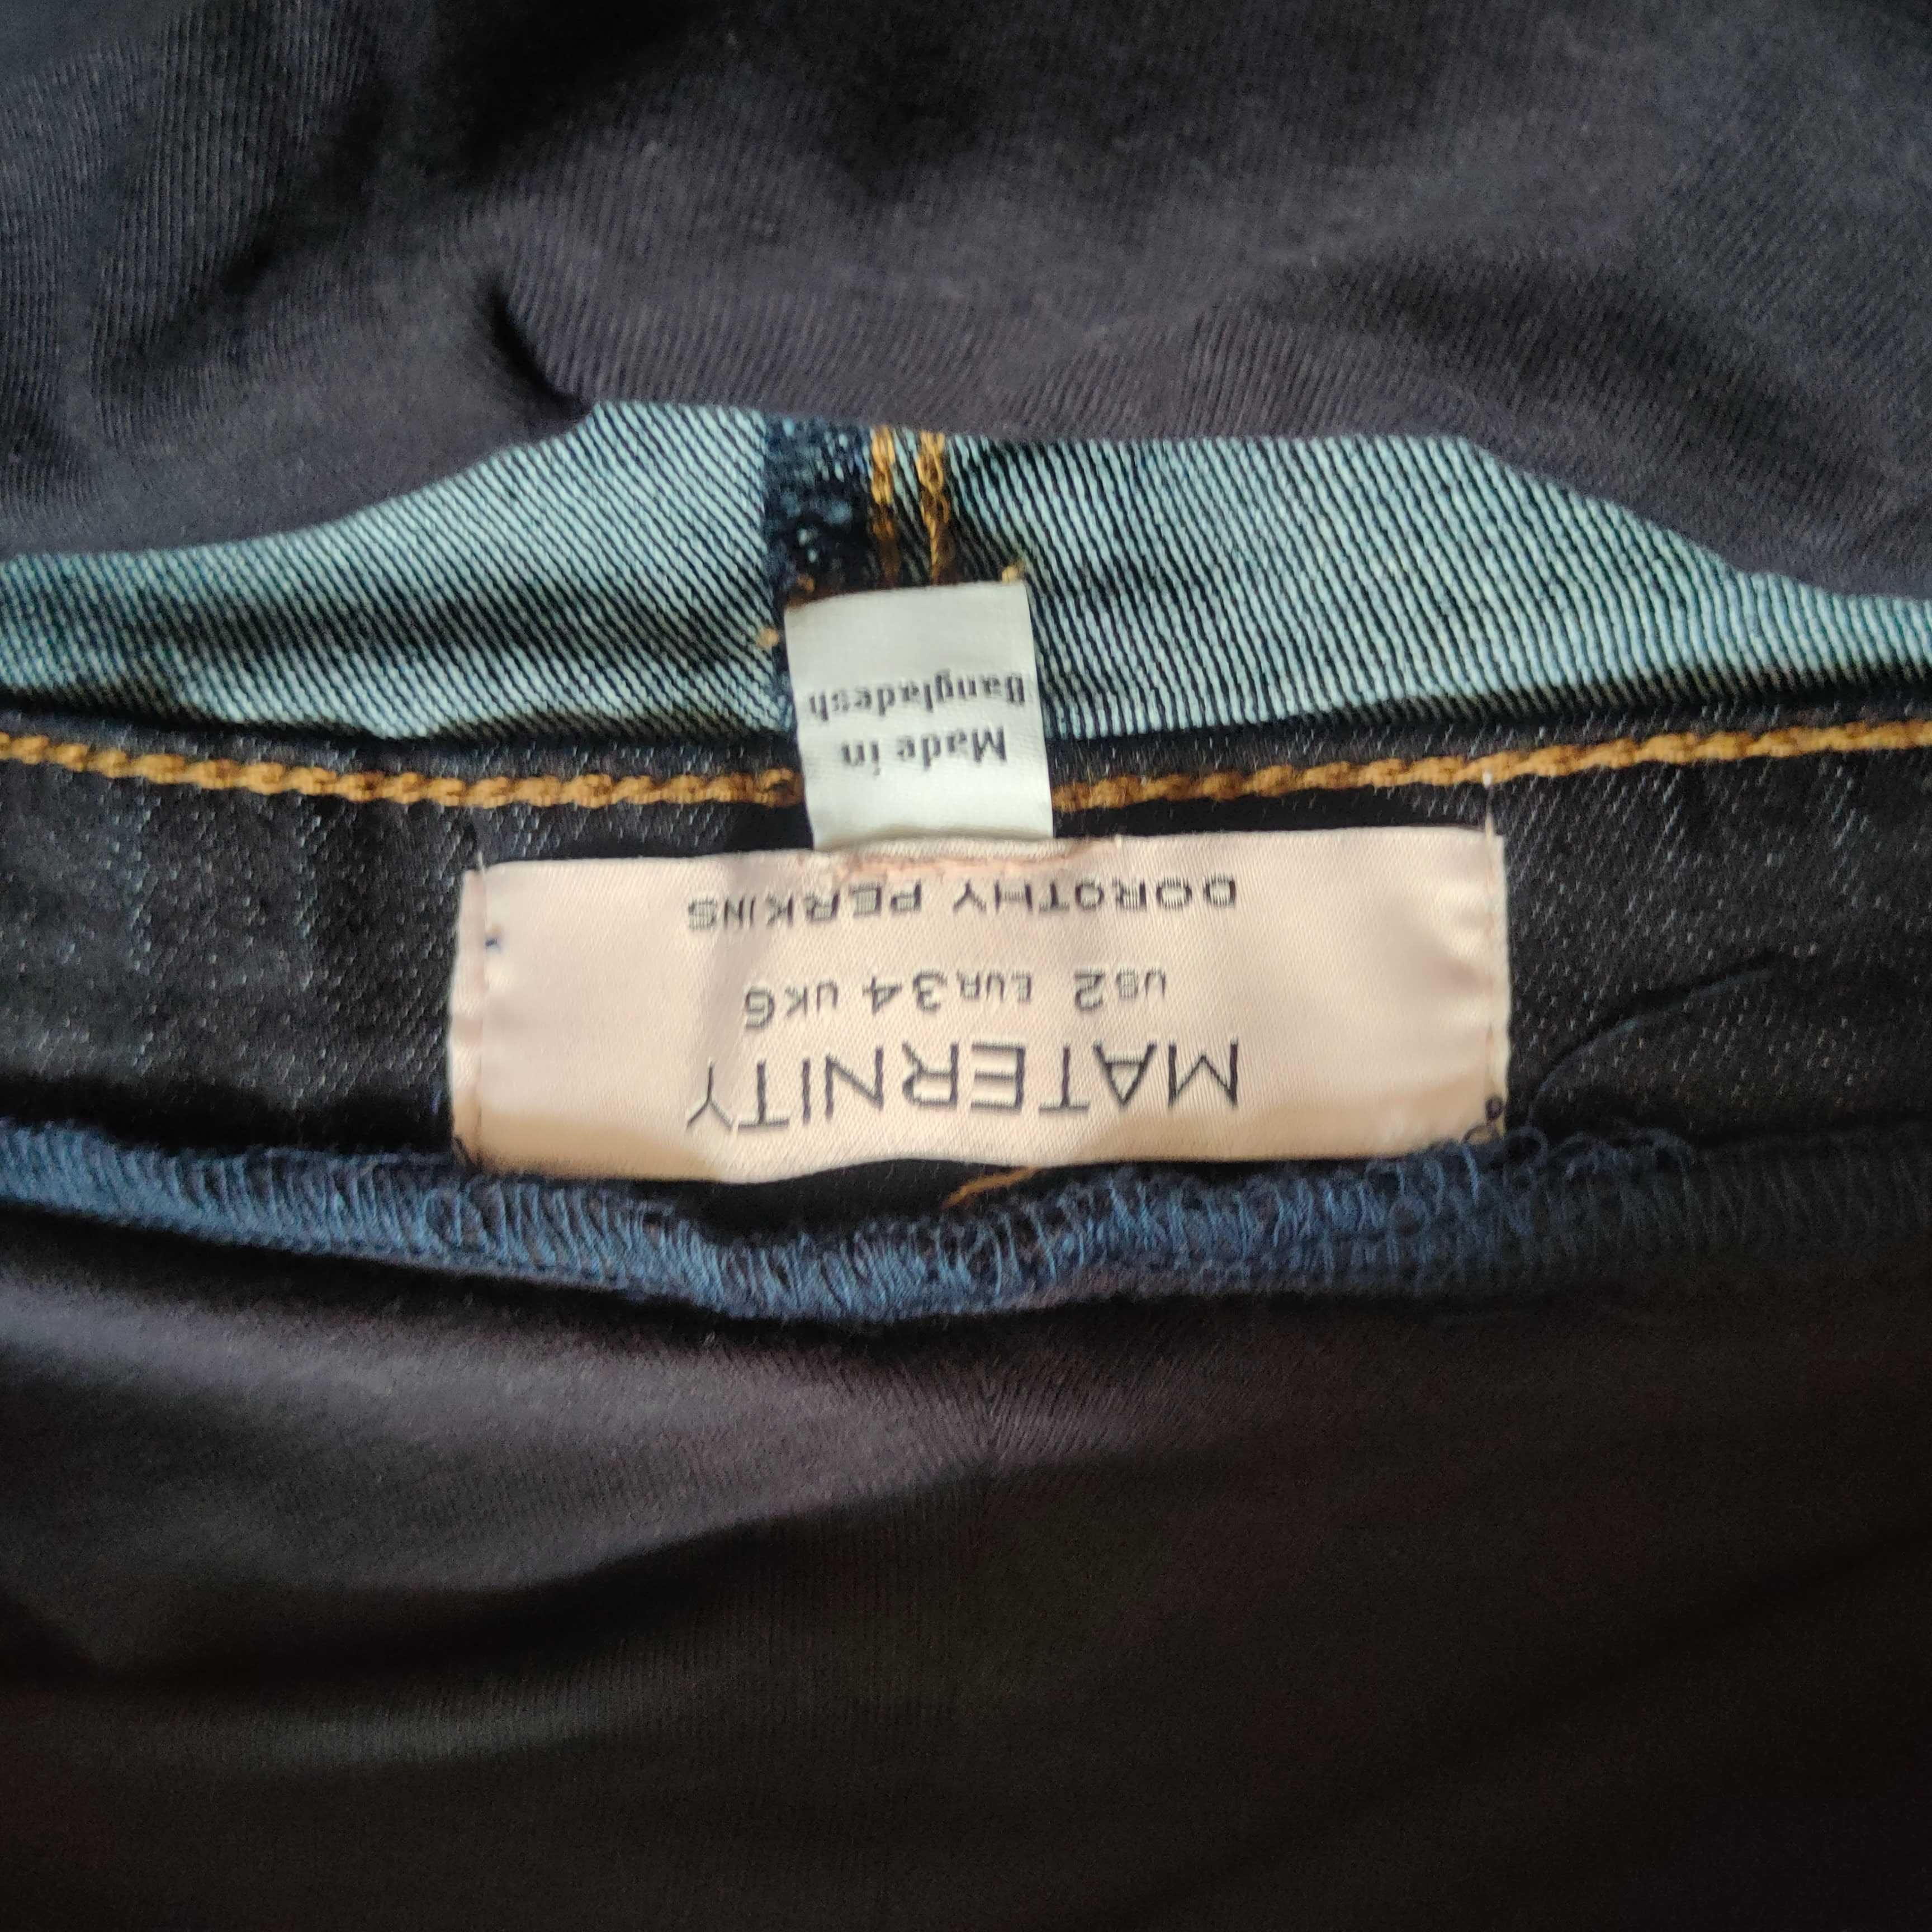 Nowe spodnie ciążowe ciąża jeansy Dorothy Perkins, r. 36 S